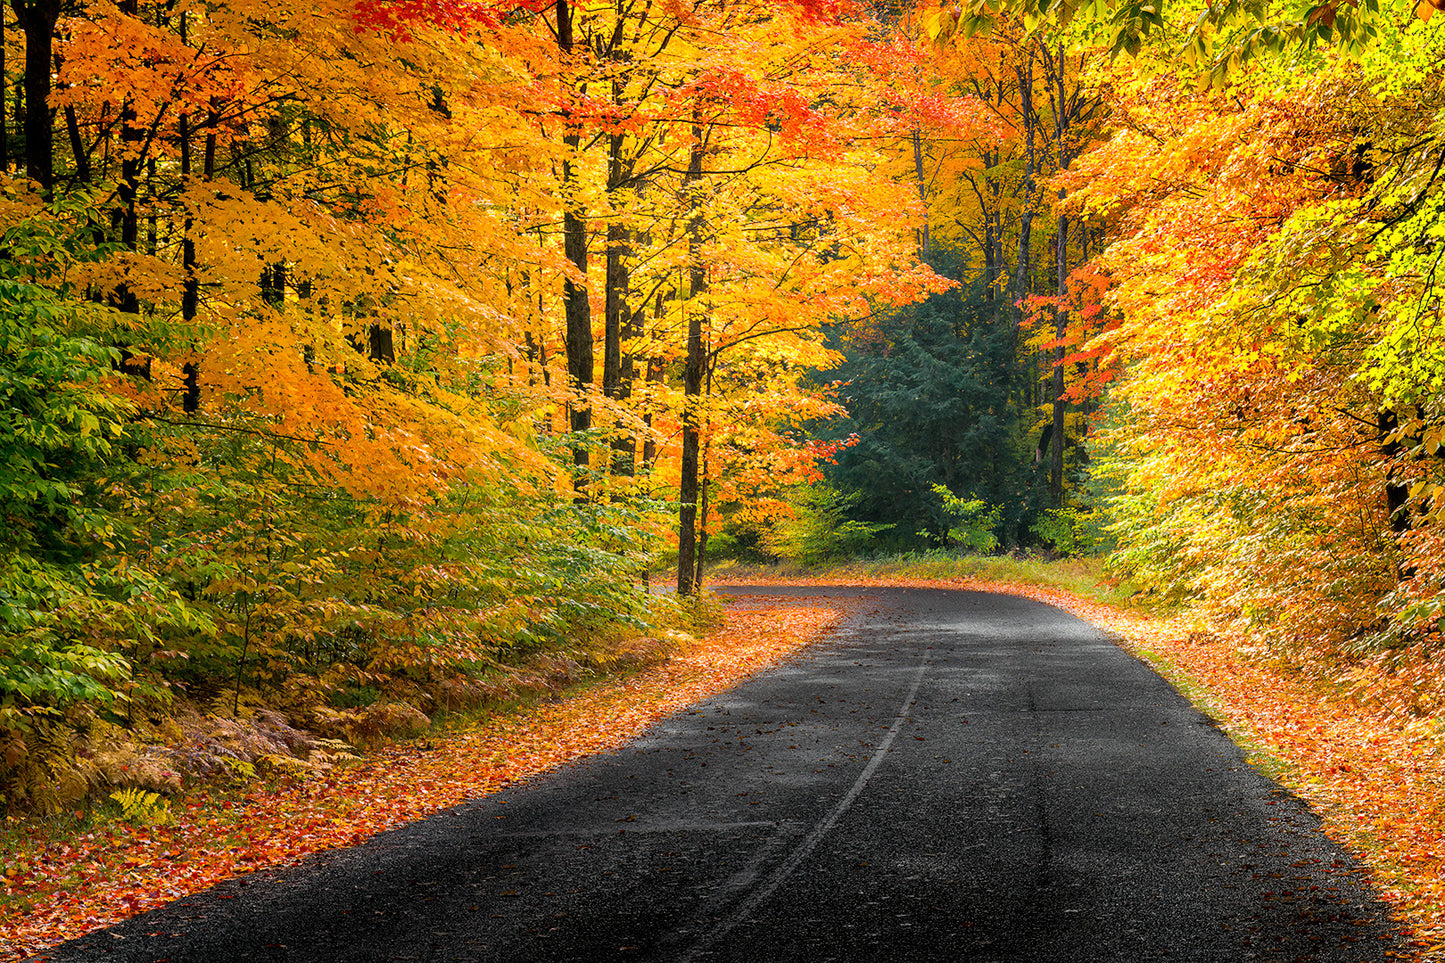 Autumn's Road